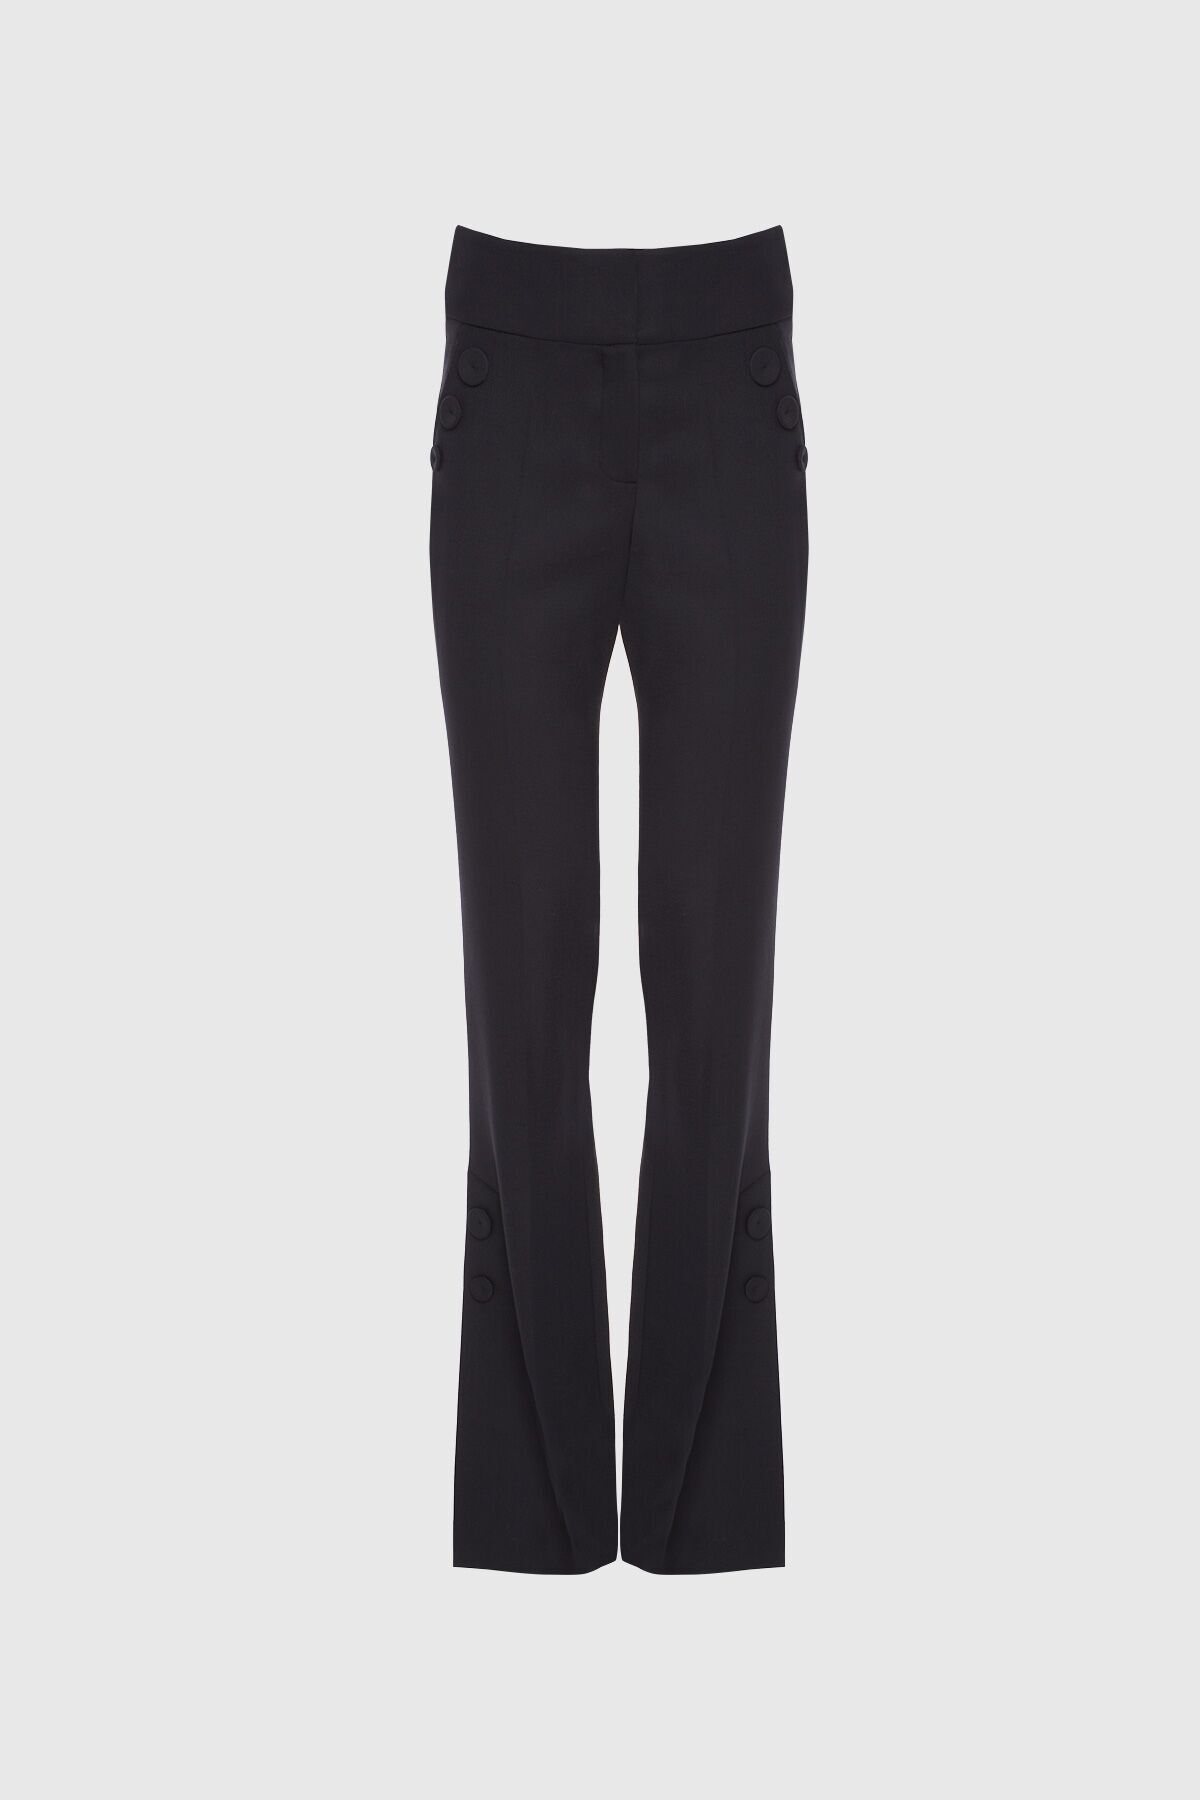 GIZIA Yüksek Bel Yanları Yırtmaçlı Flare Siyah Pantolon